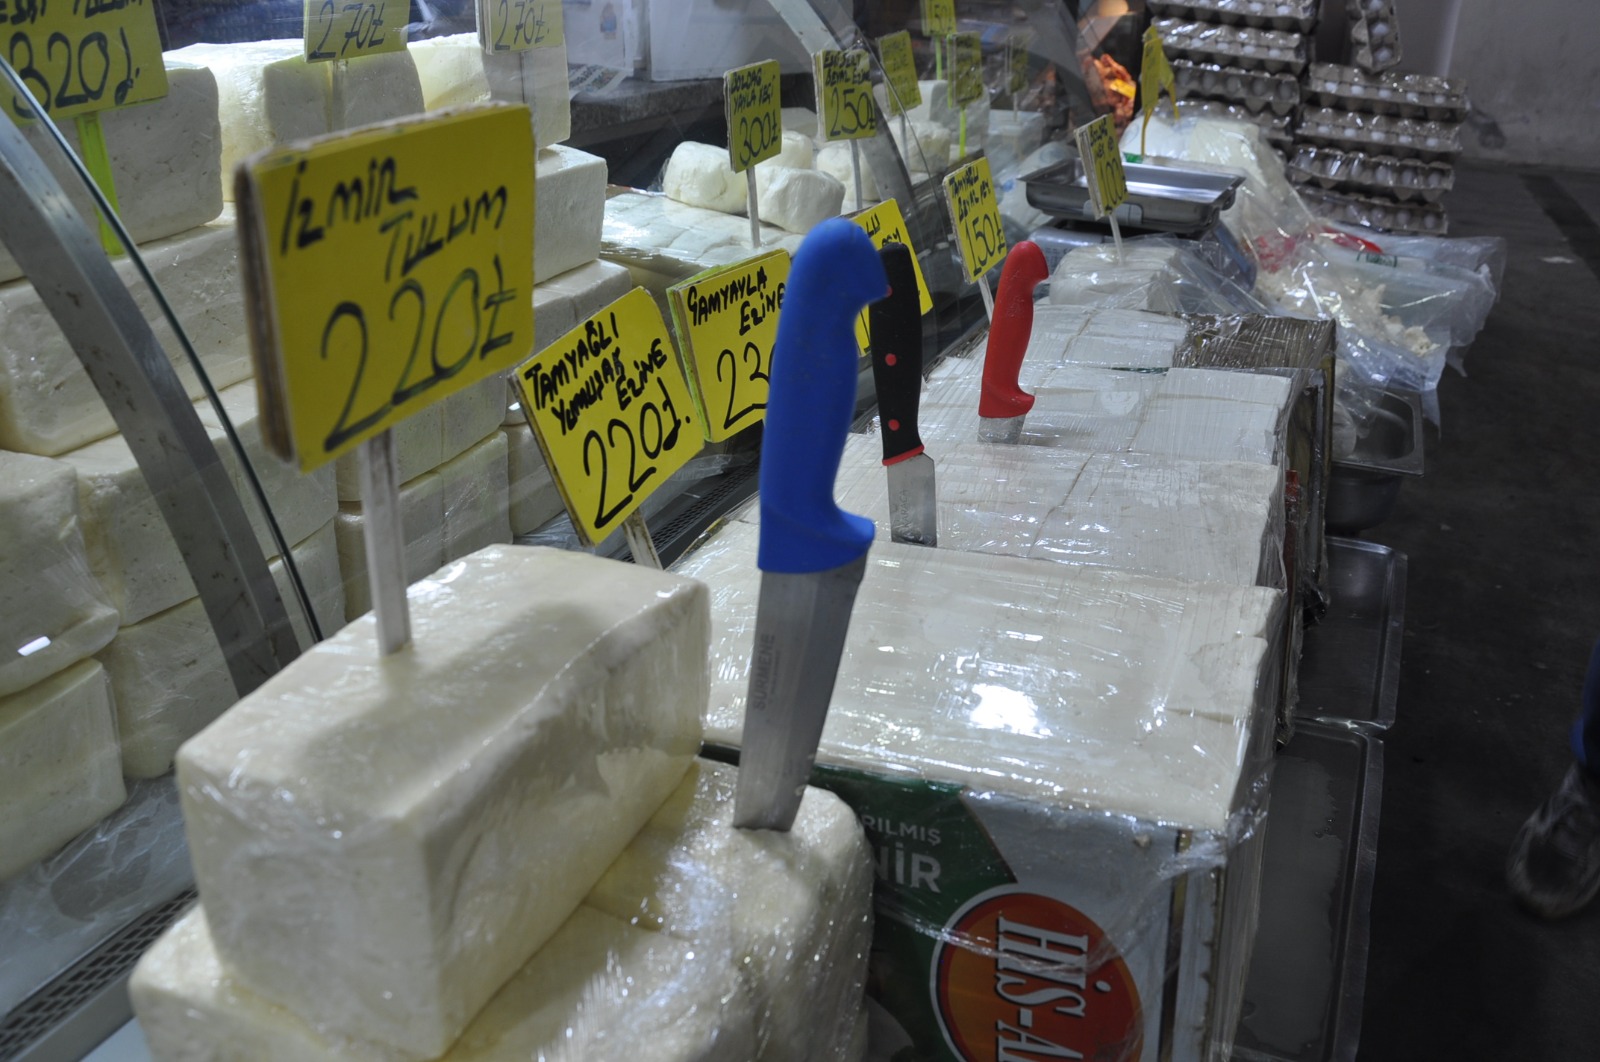 Peynir Zeytin Fiyatlari 27 Mart Carsamba Pazari11 9